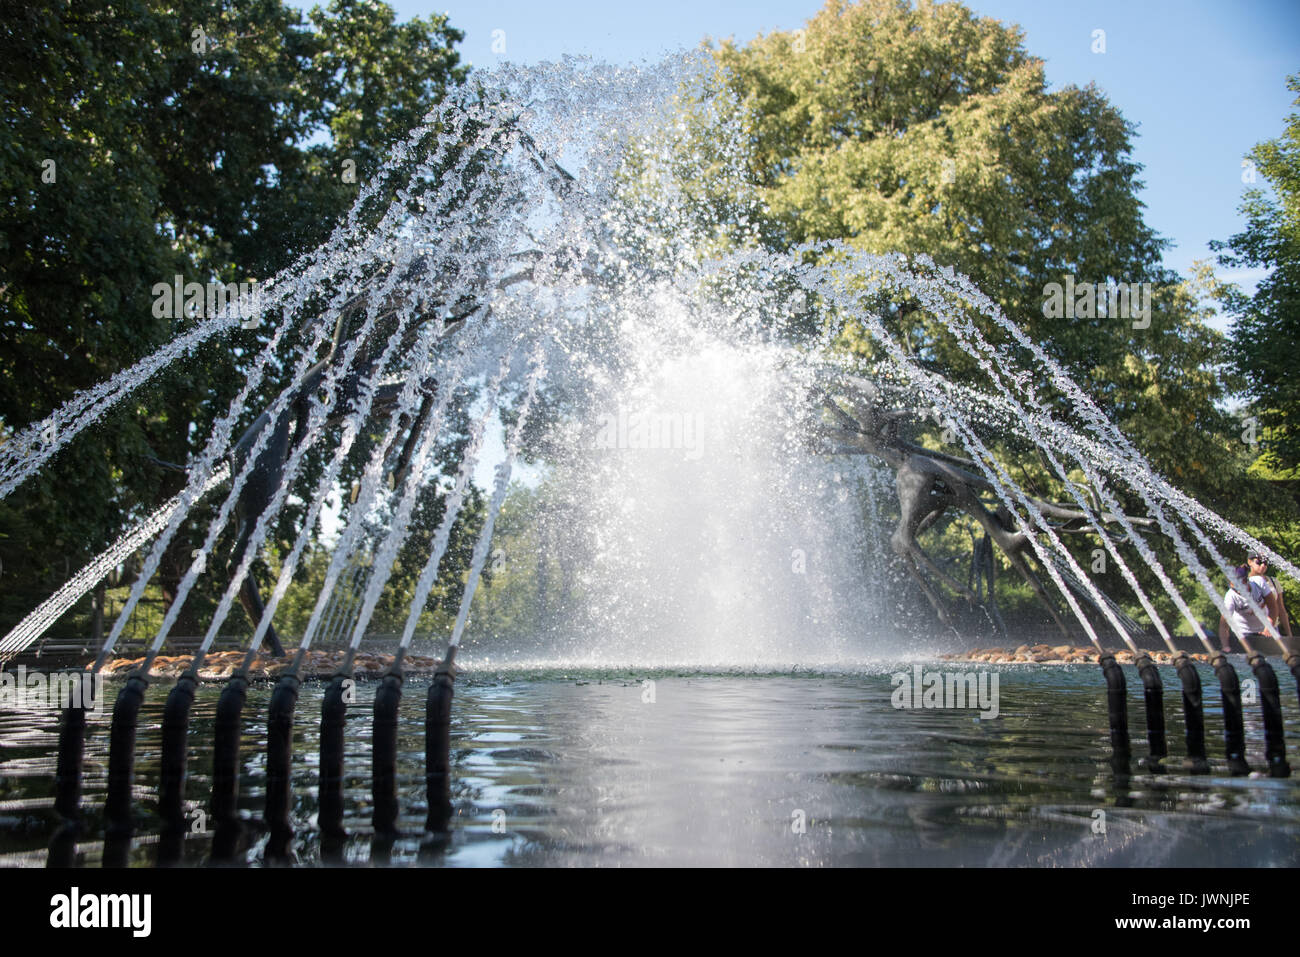 Fontana ornamentale con archi di getti di acqua da ugelli ad alta pressione formando un display su uno stagno in un parco boscoso Foto Stock